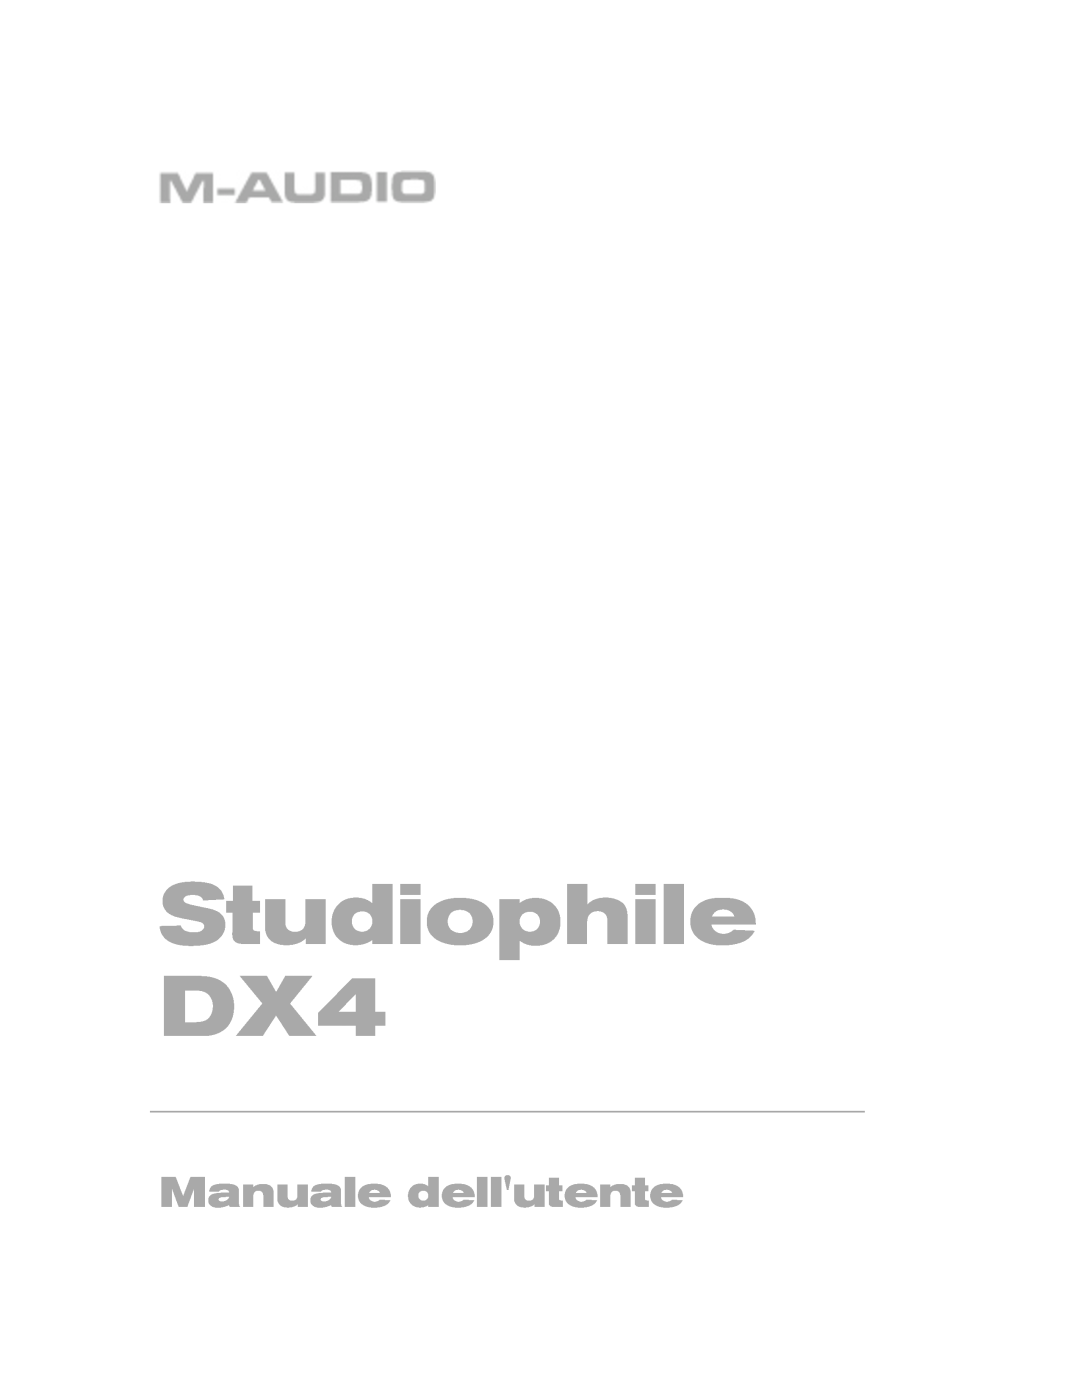 M-Audio manual Studiophile DX4, ユーザーズ・マニュアル 